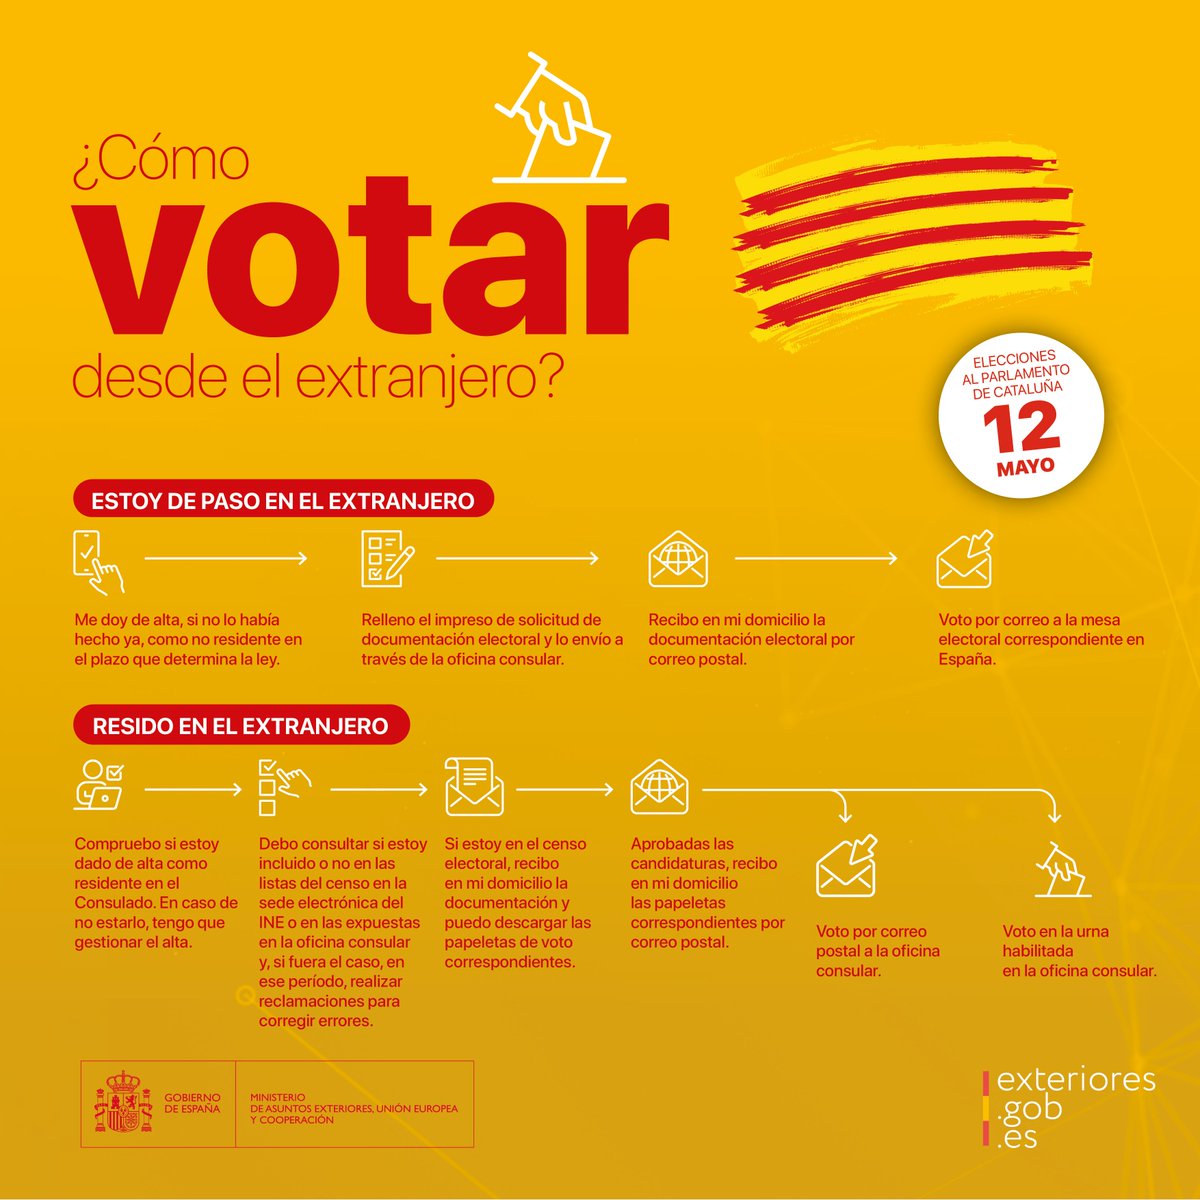 #VotoCERA: si eres español residente en nuestra circunscripción y tienes derecho a voto en las #EleccionesAutonomicas #Cataluña2024 del #12M

#VotoporCorreo al Consulado: plazo no más tarde del 7 de mayo.

Más ℹ️ en web exteriores.gob.es/Embajadas/tegu…